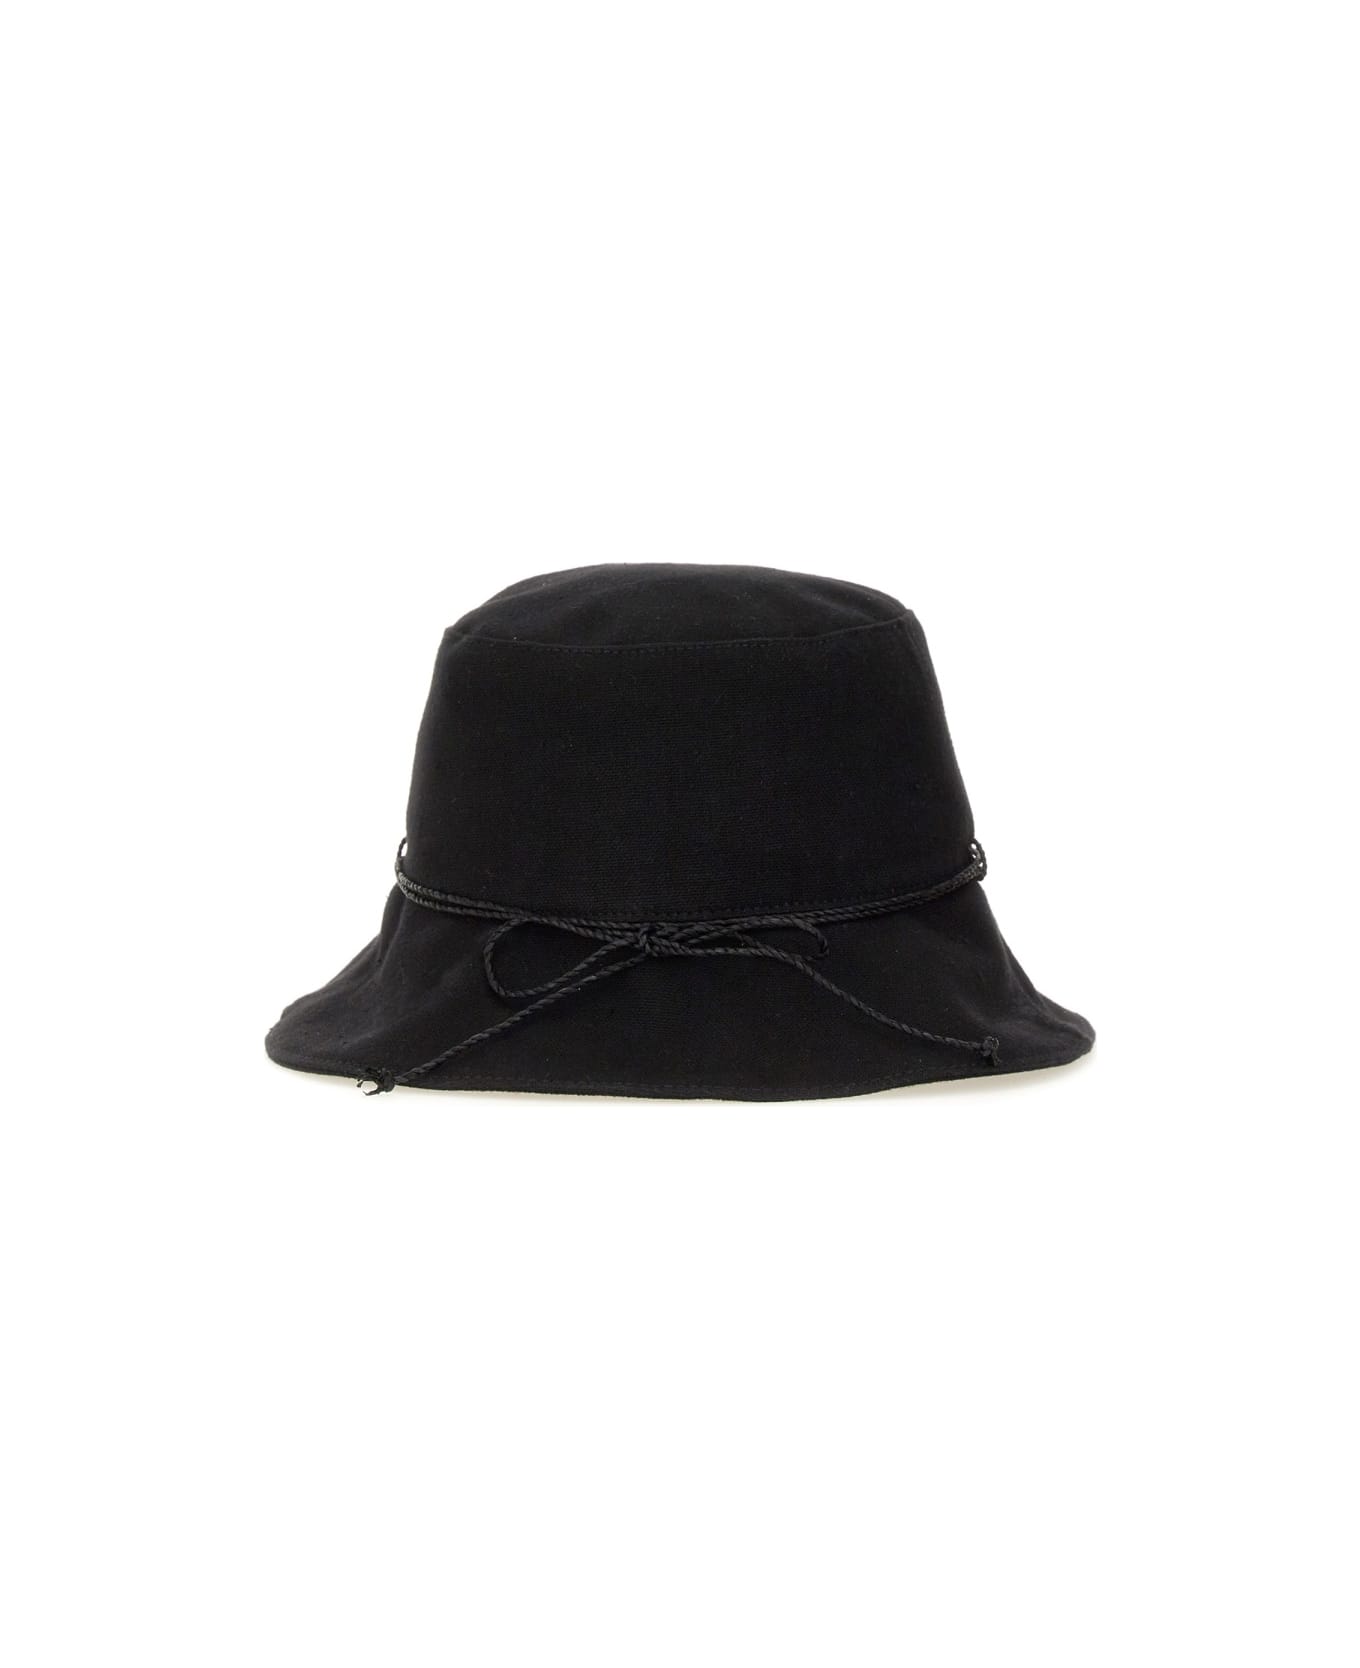 Helen Kaminski Hat "sundar" - BLACK 帽子